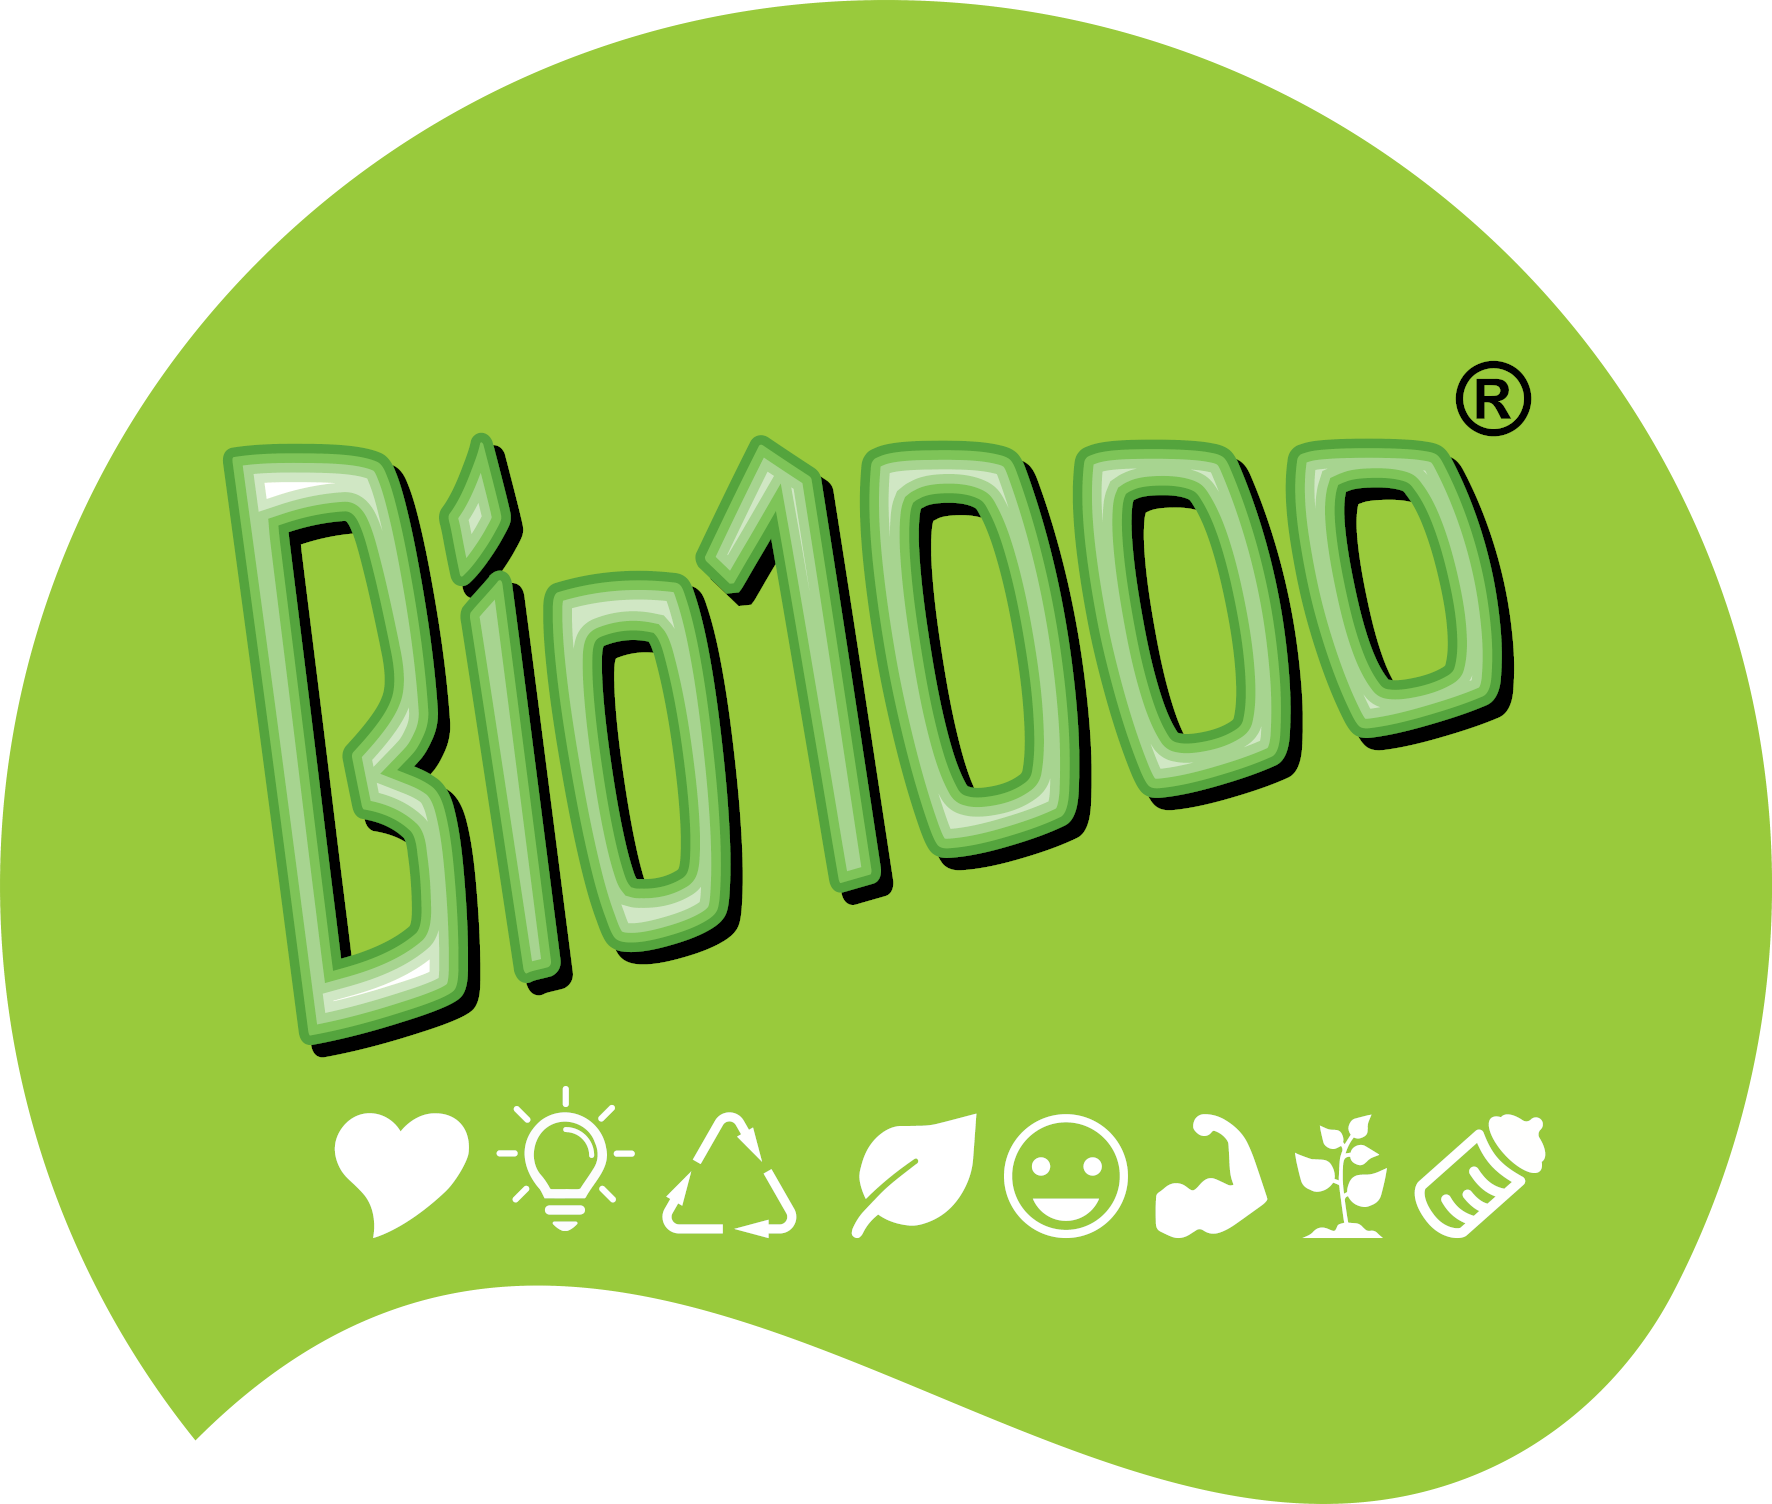 biowin bio1000